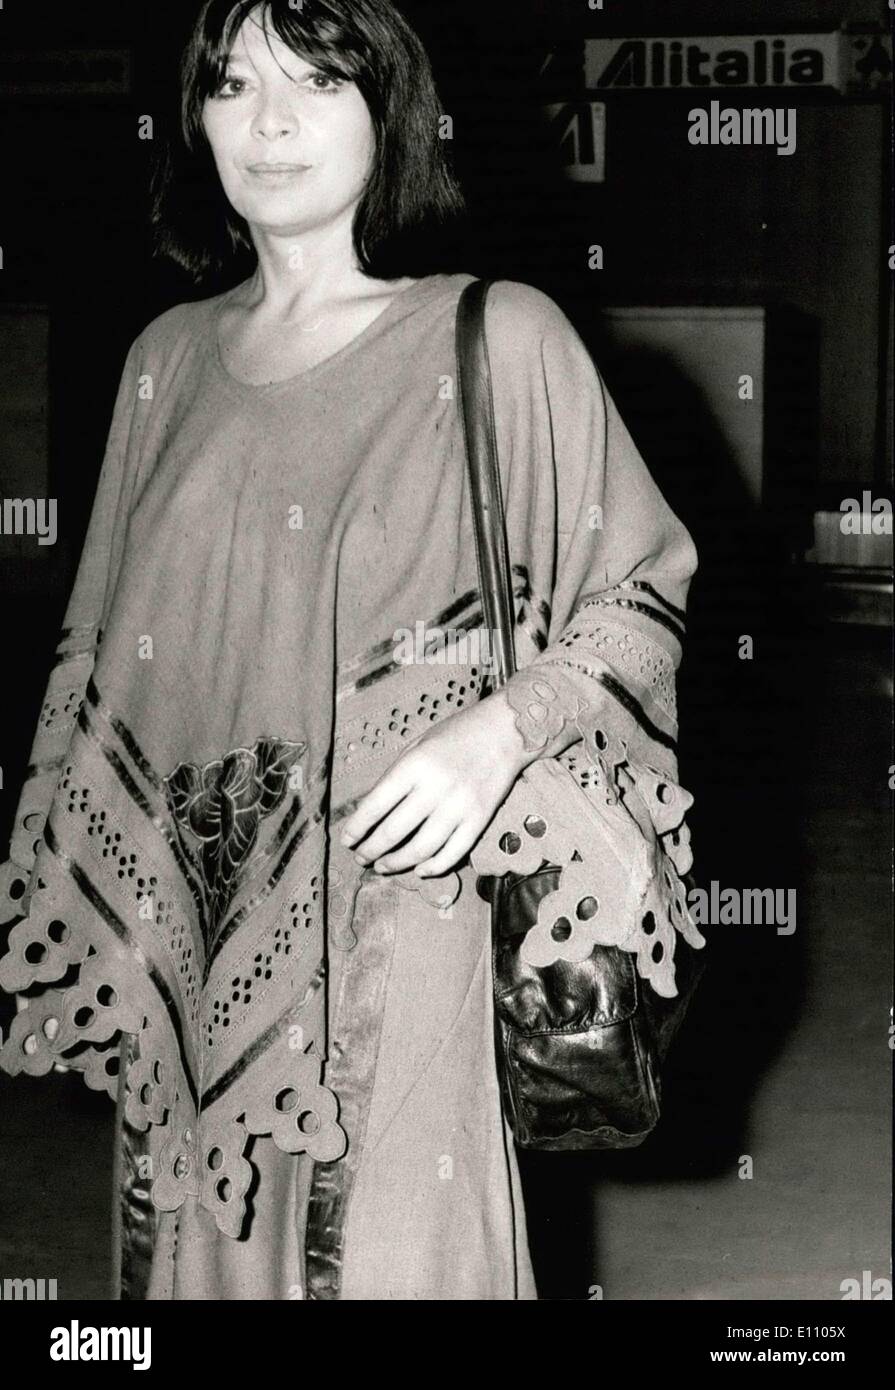 Sett. 20, 1974 - Giulietta Greco in Grecia. Foto Stock